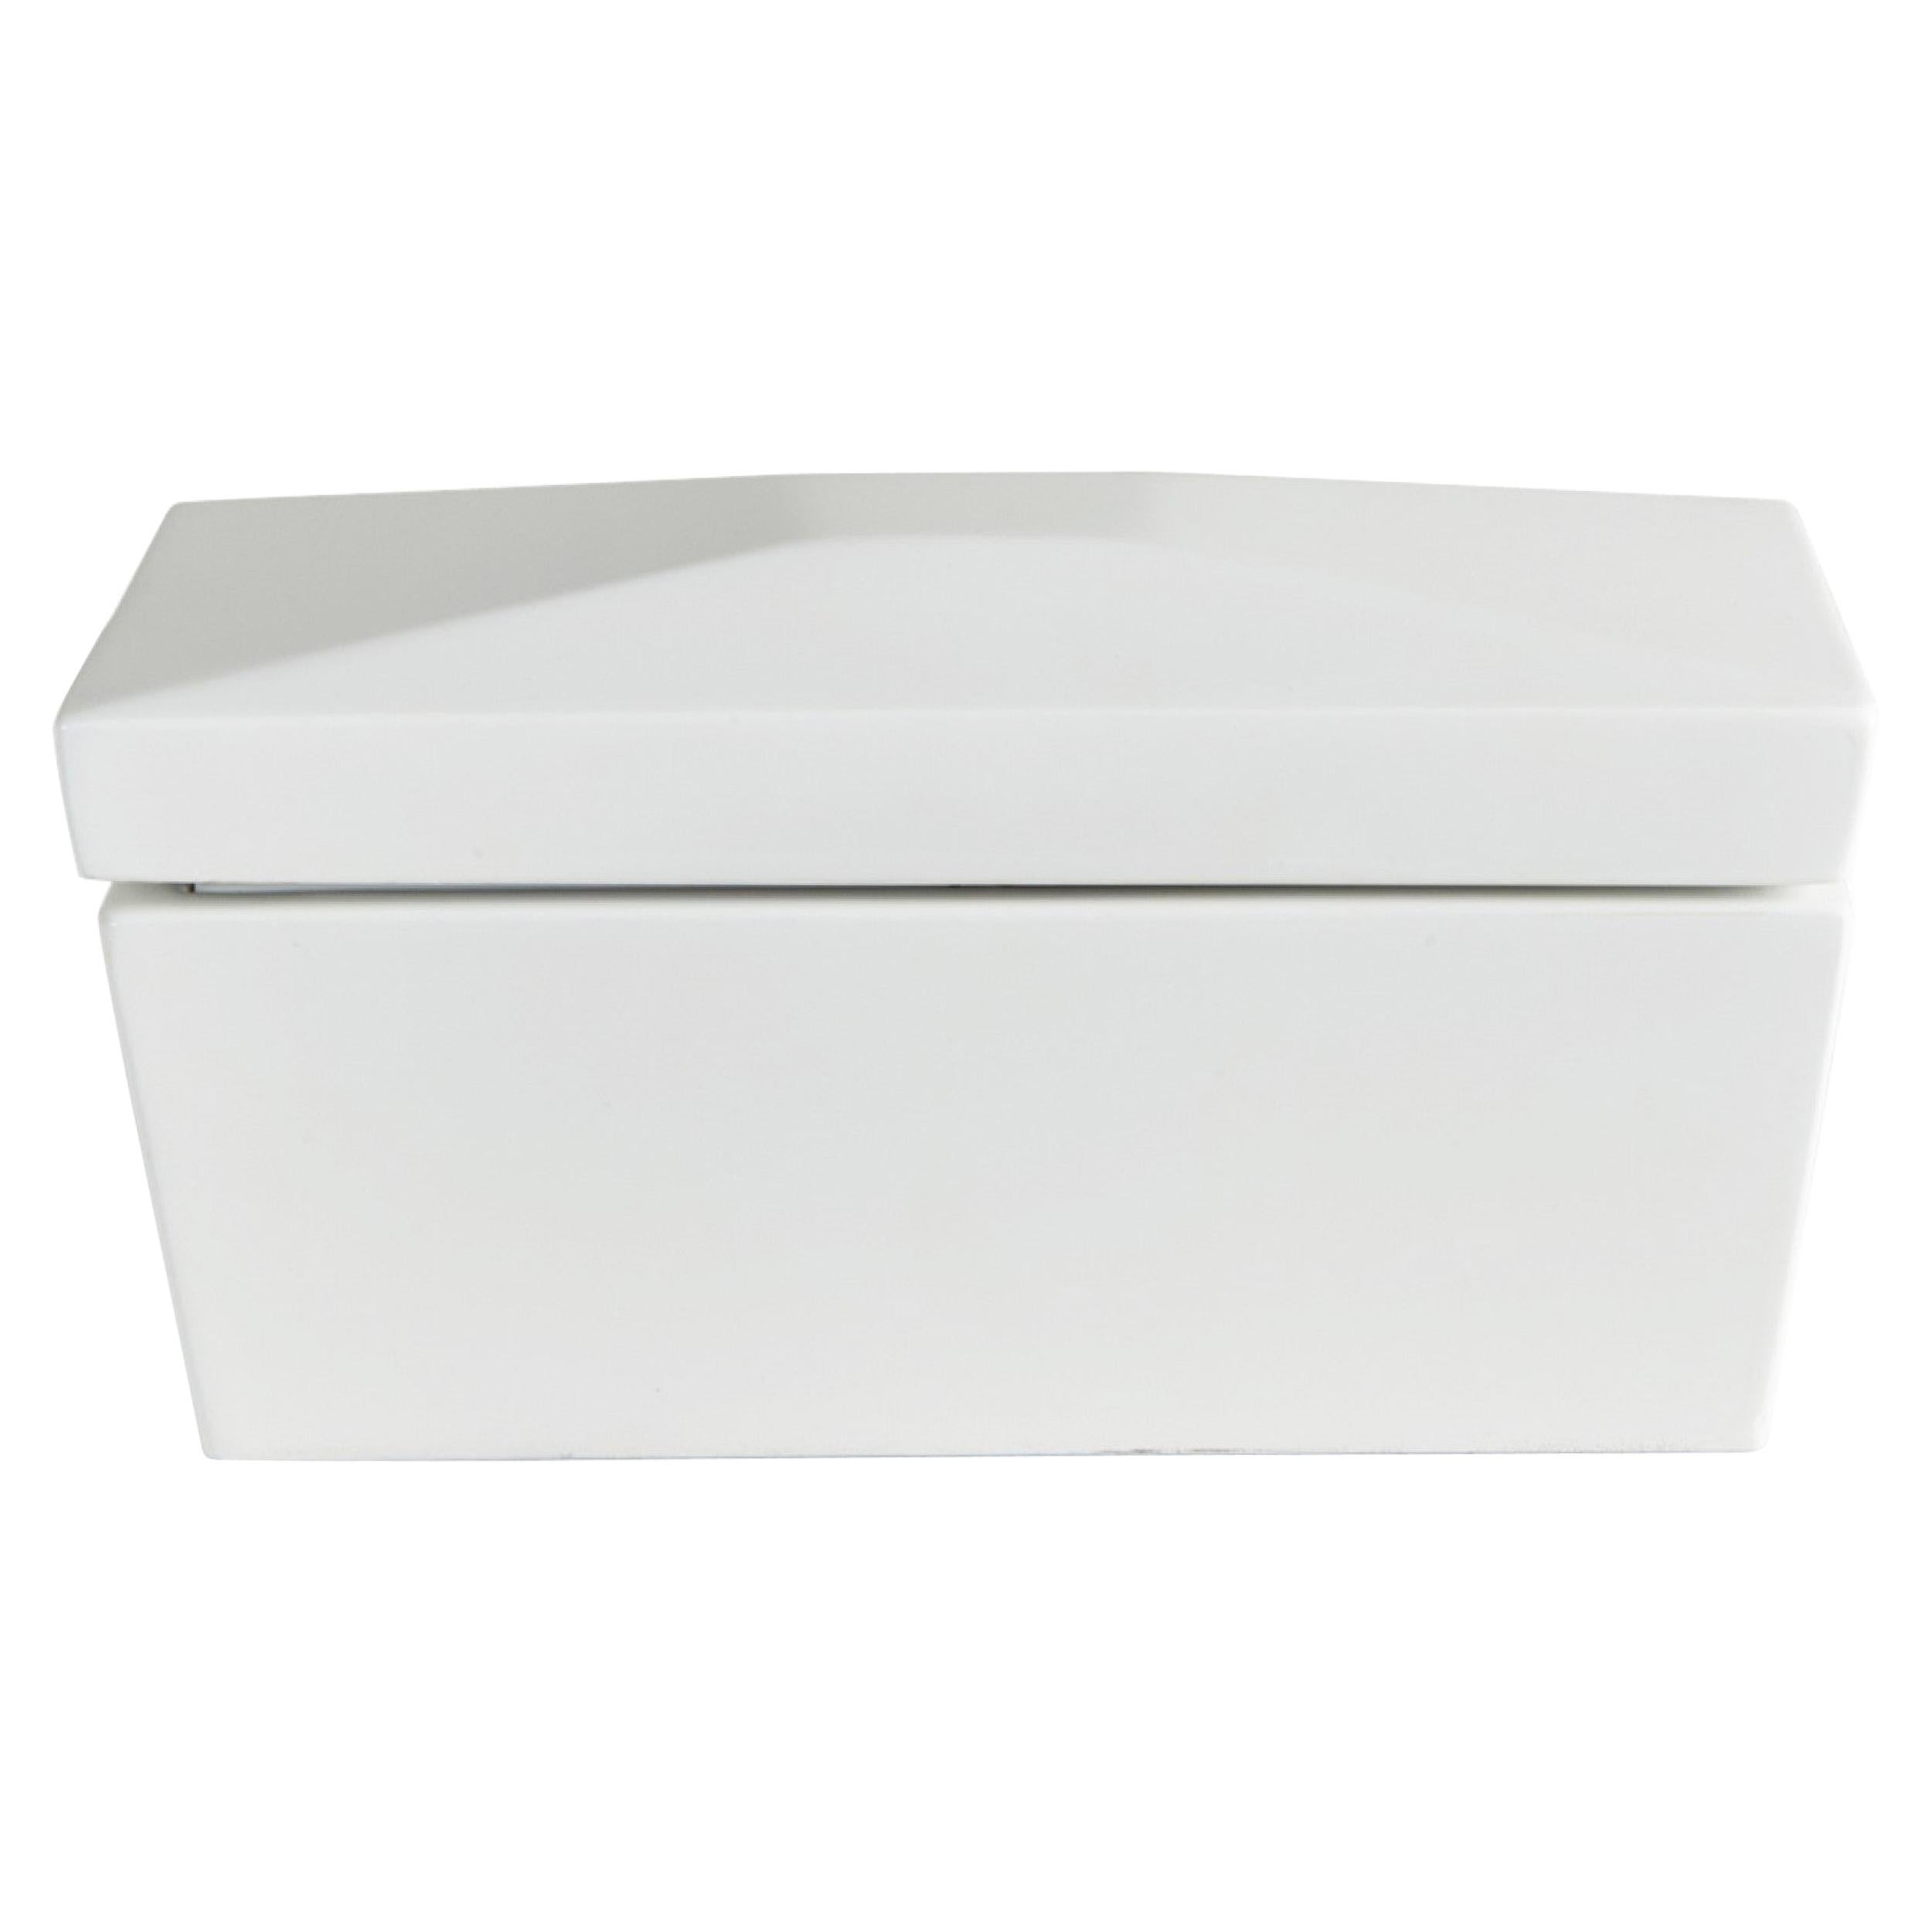 Boîte décorative rectangulaire en bois laqué blanc contemporaine personnalisée et personnalisée